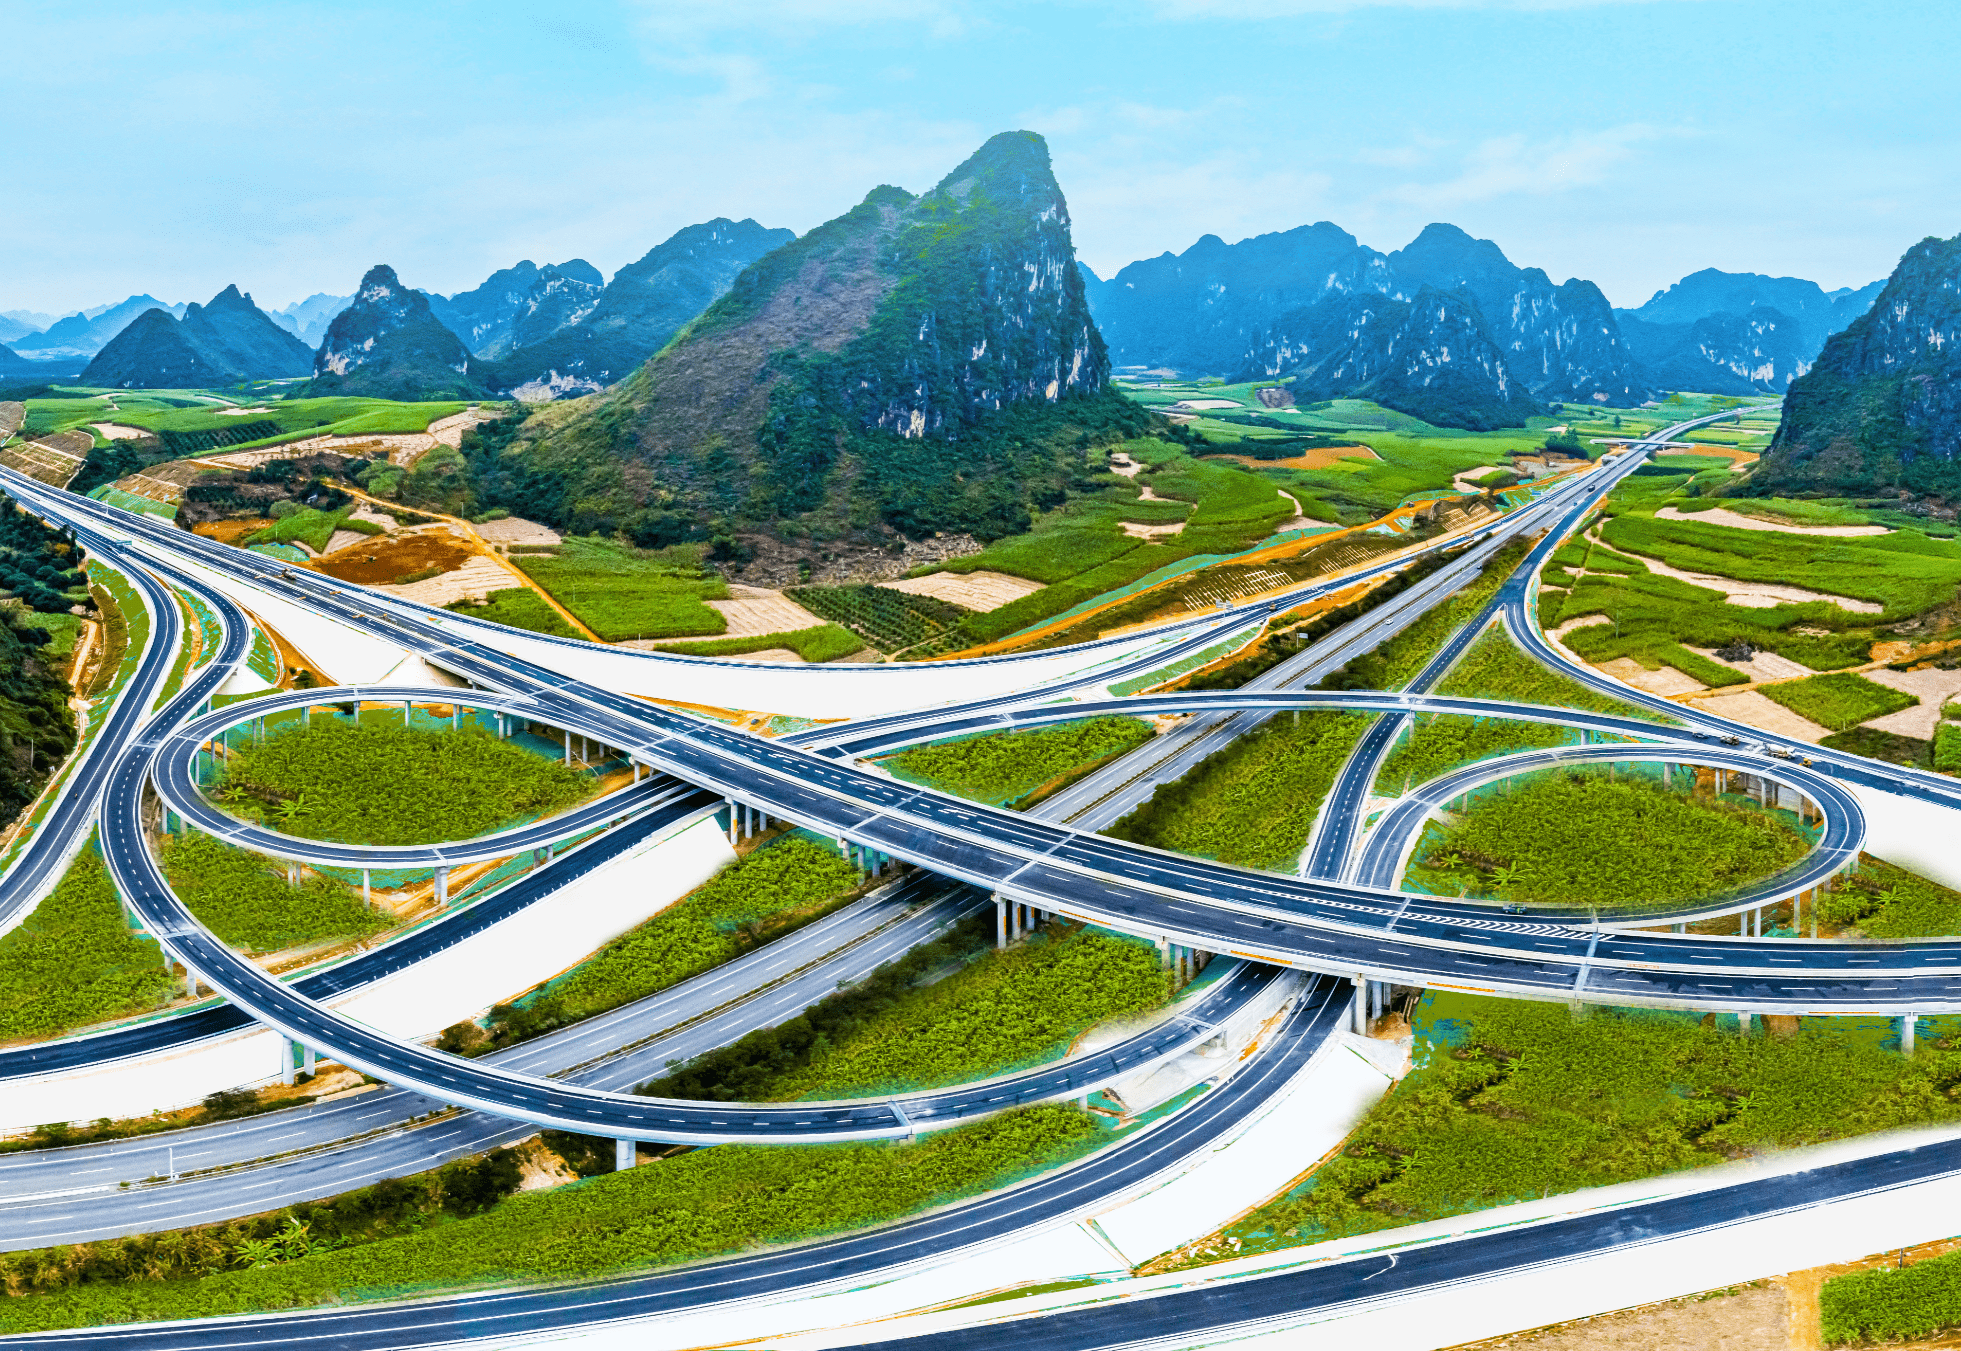 巴凭高速是广西壮族自治区统筹推进的重大项目之一,分为巴马至田东段